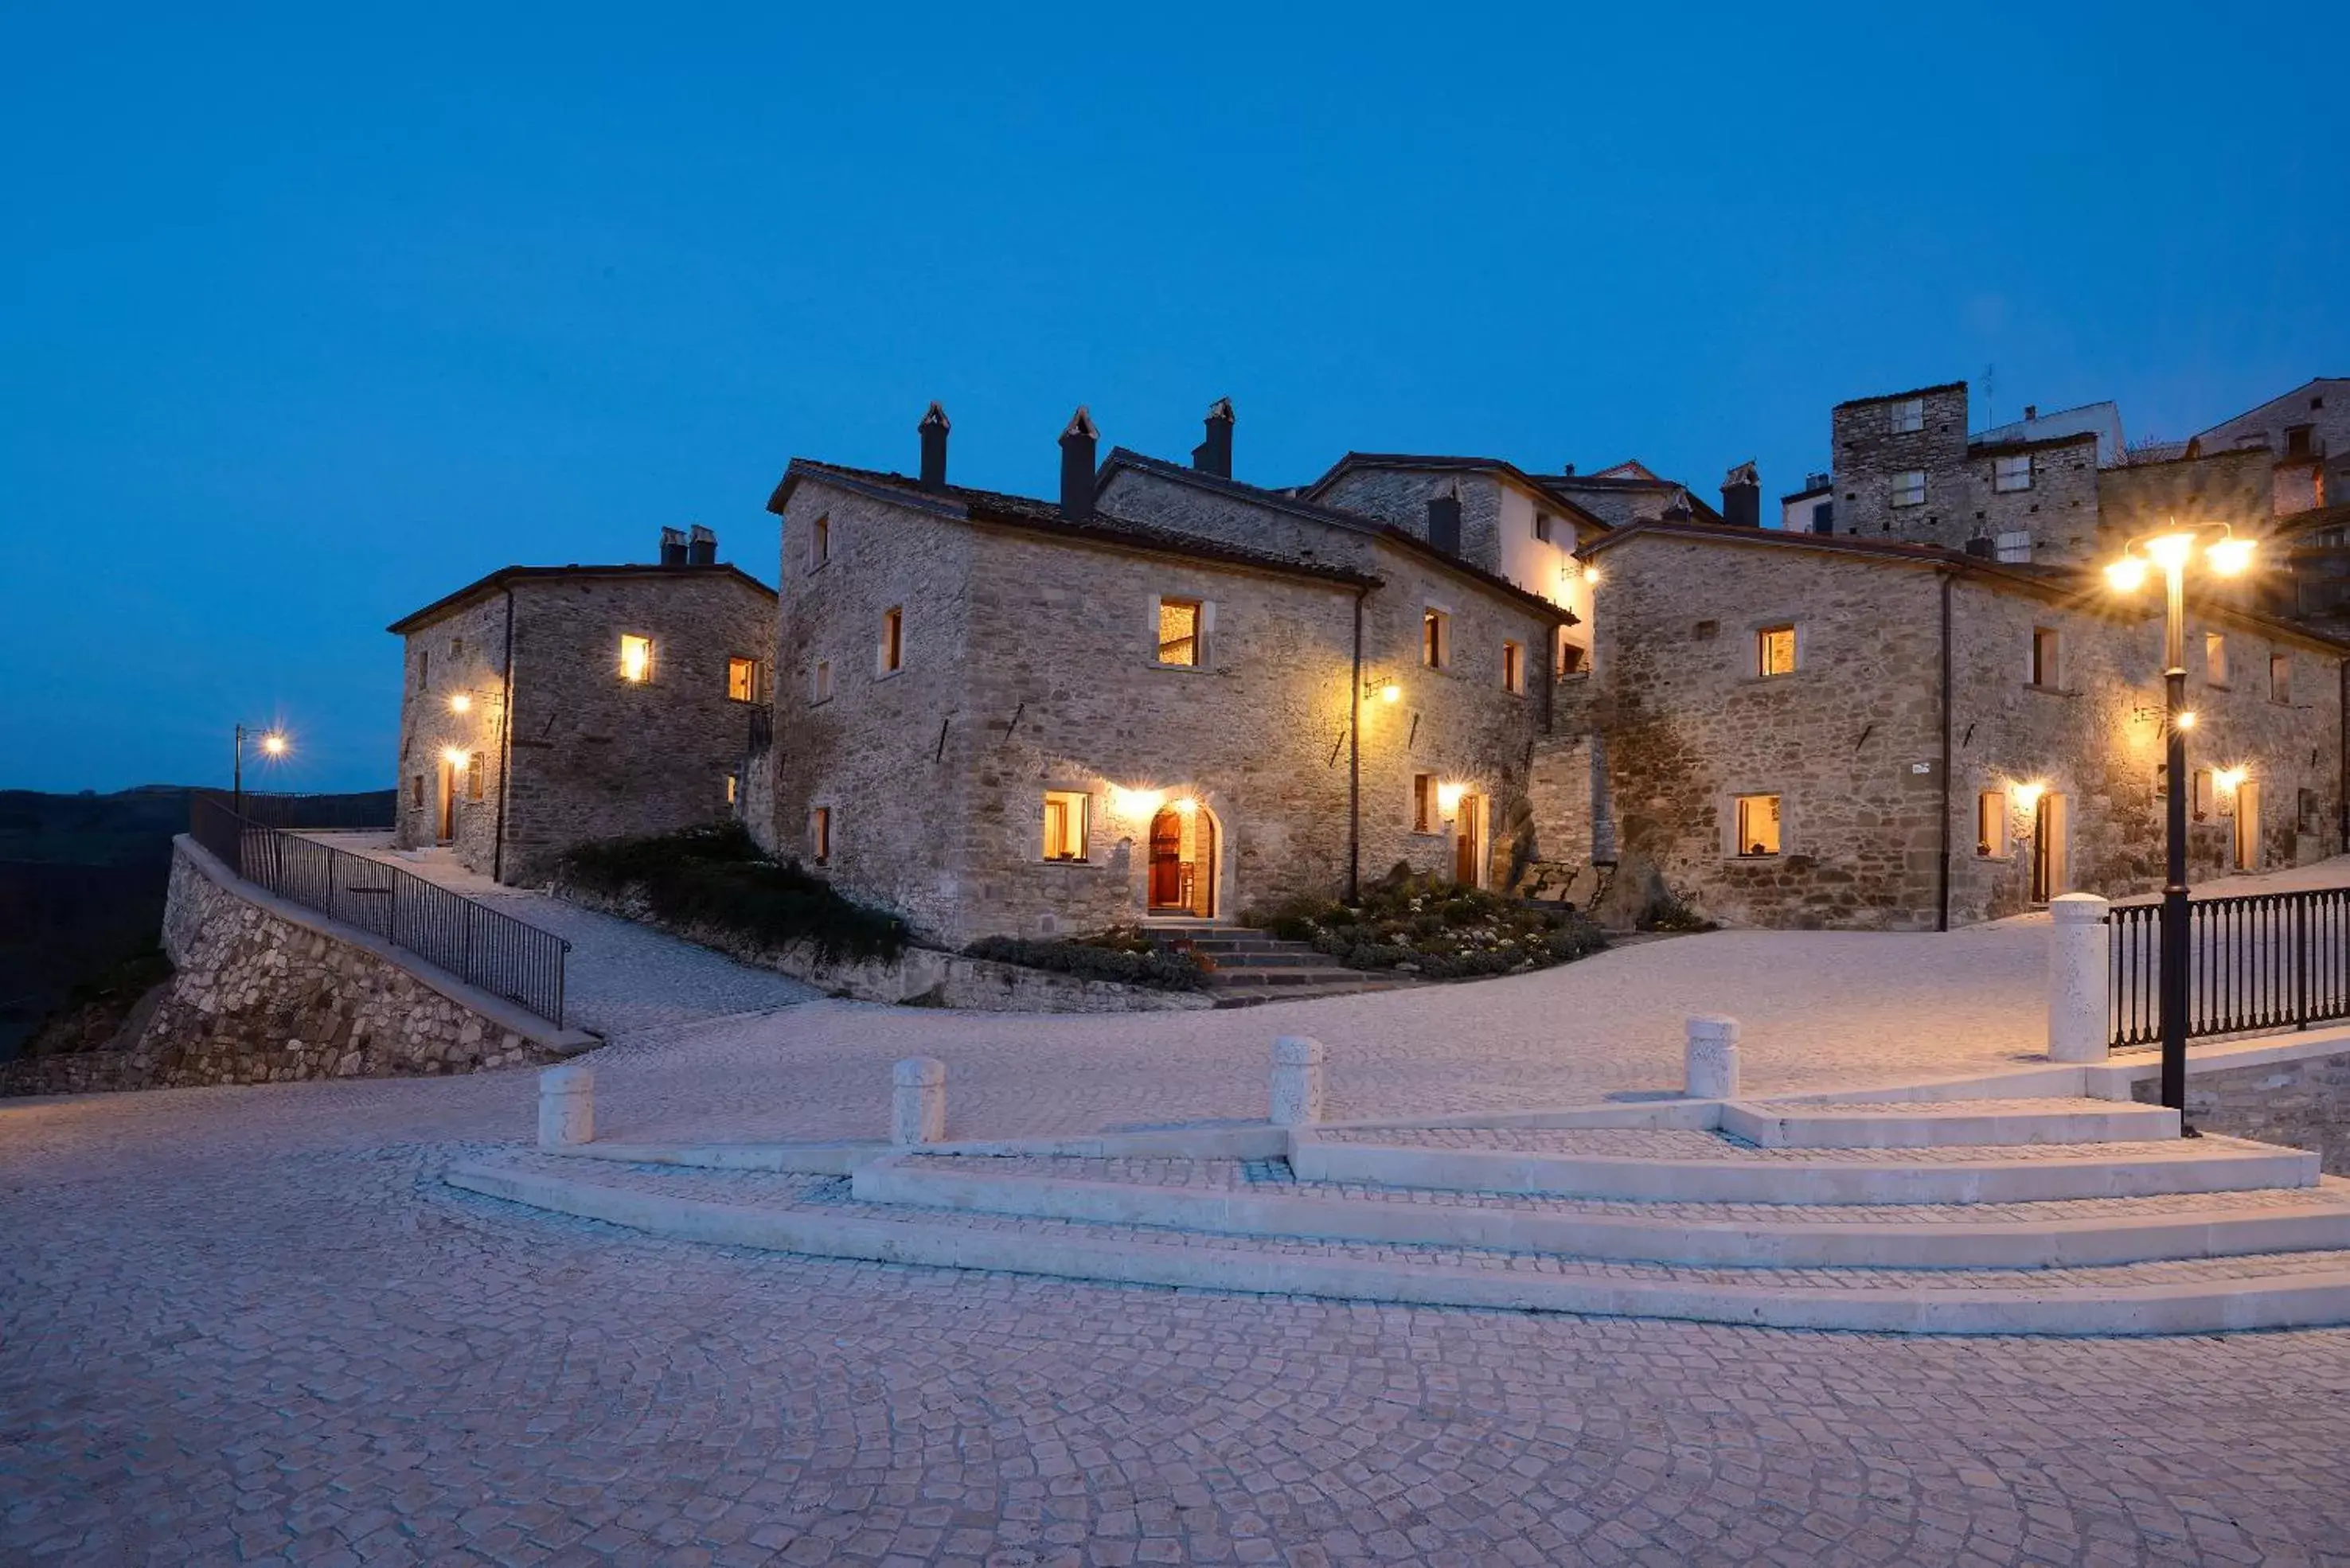 Property building, Winter in Borgotufi Albergo Diffuso